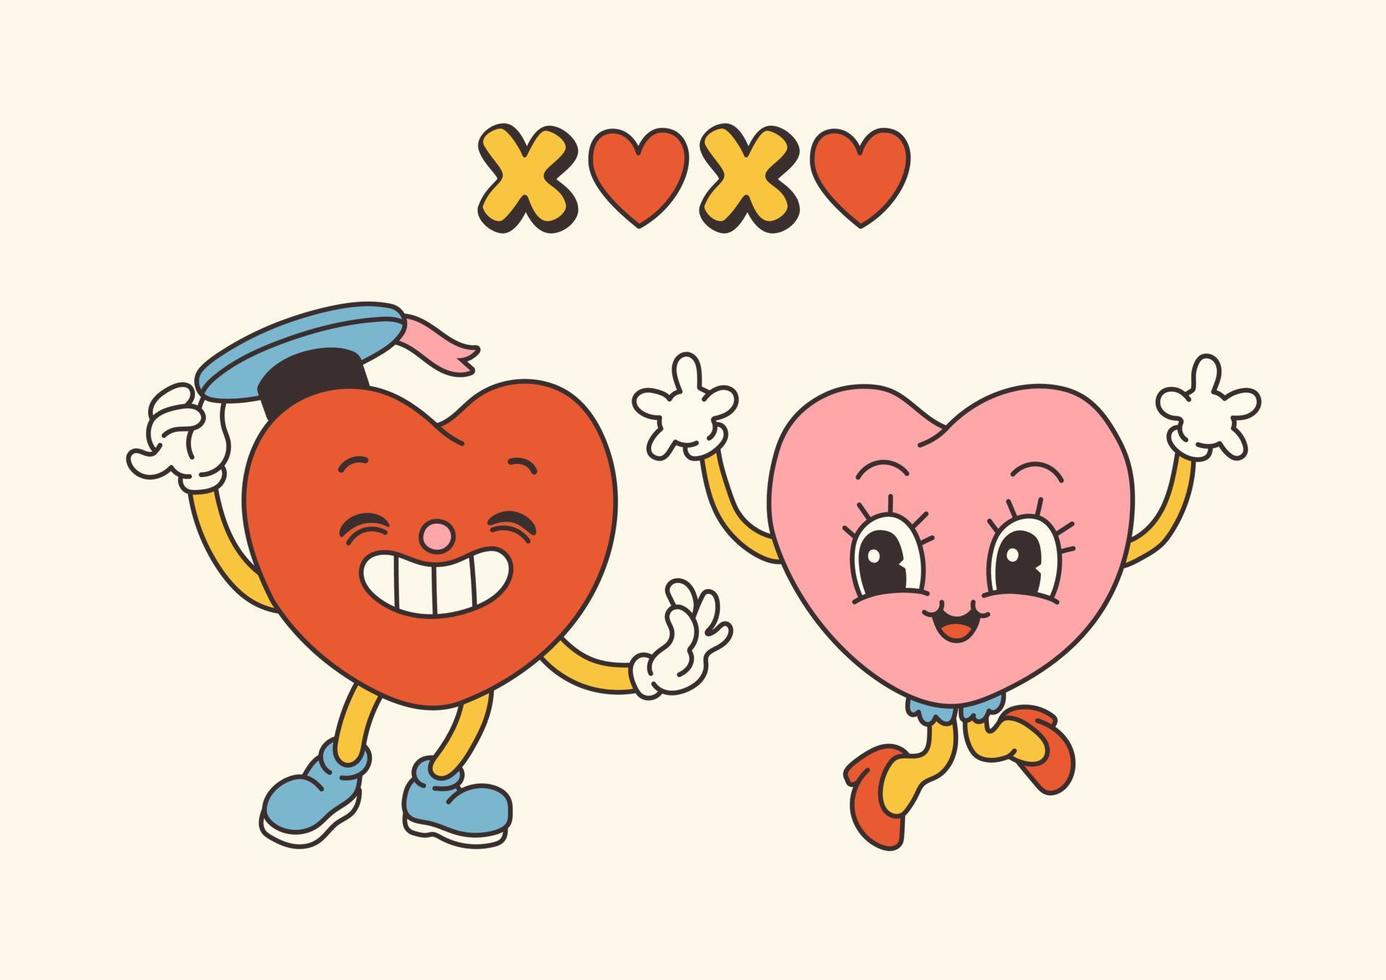 personajes retro maravillosos del día de san valentín con consignas sobre el amor. estilo de dibujos animados de moda de los años 70. tarjeta, postal, vector de impresión